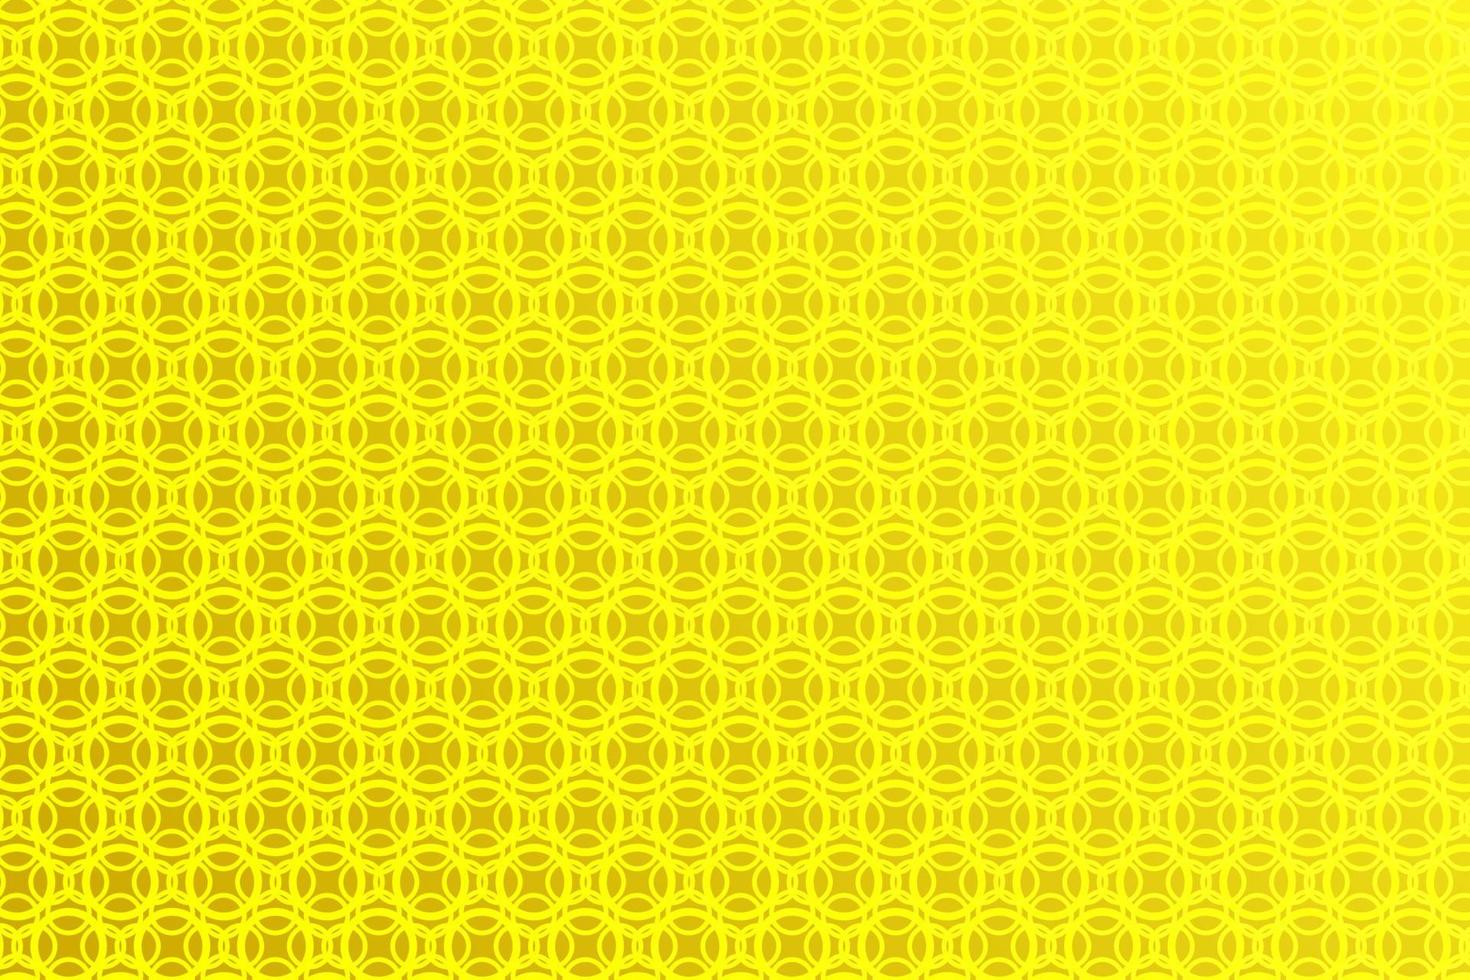 padrão com elementos geométricos em tons de amarelo dourado, fundo gradiente abstrato. vetor